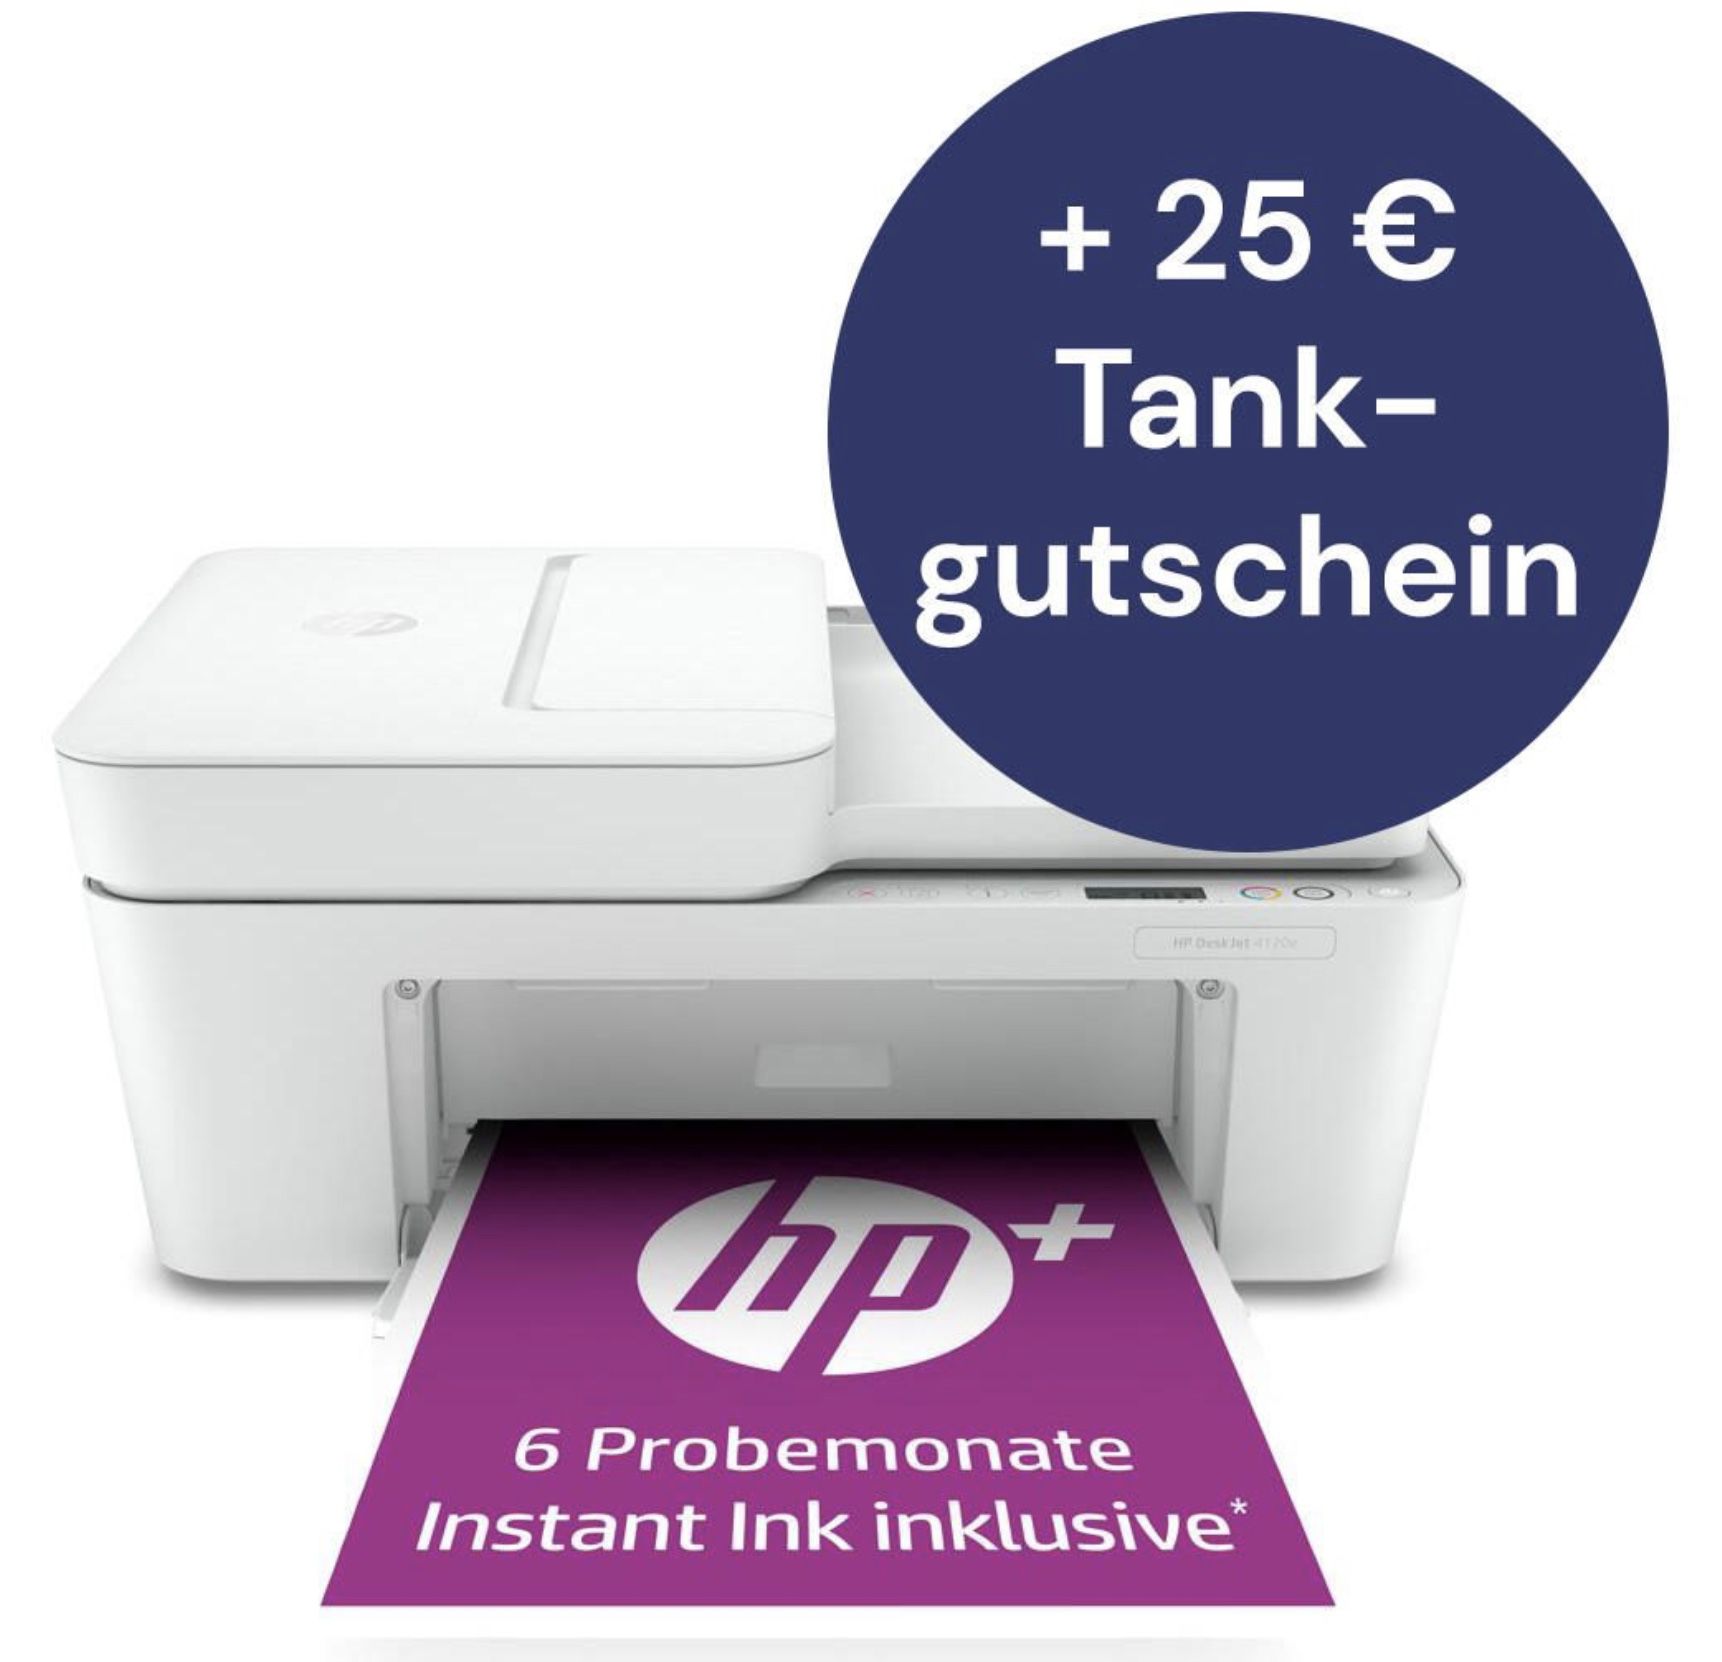 HP DeskJet 4120e Tintenstrahl-Multifunktionsgerät inkl. 25€ Tankgutschein für 92,25€ (statt 103€)